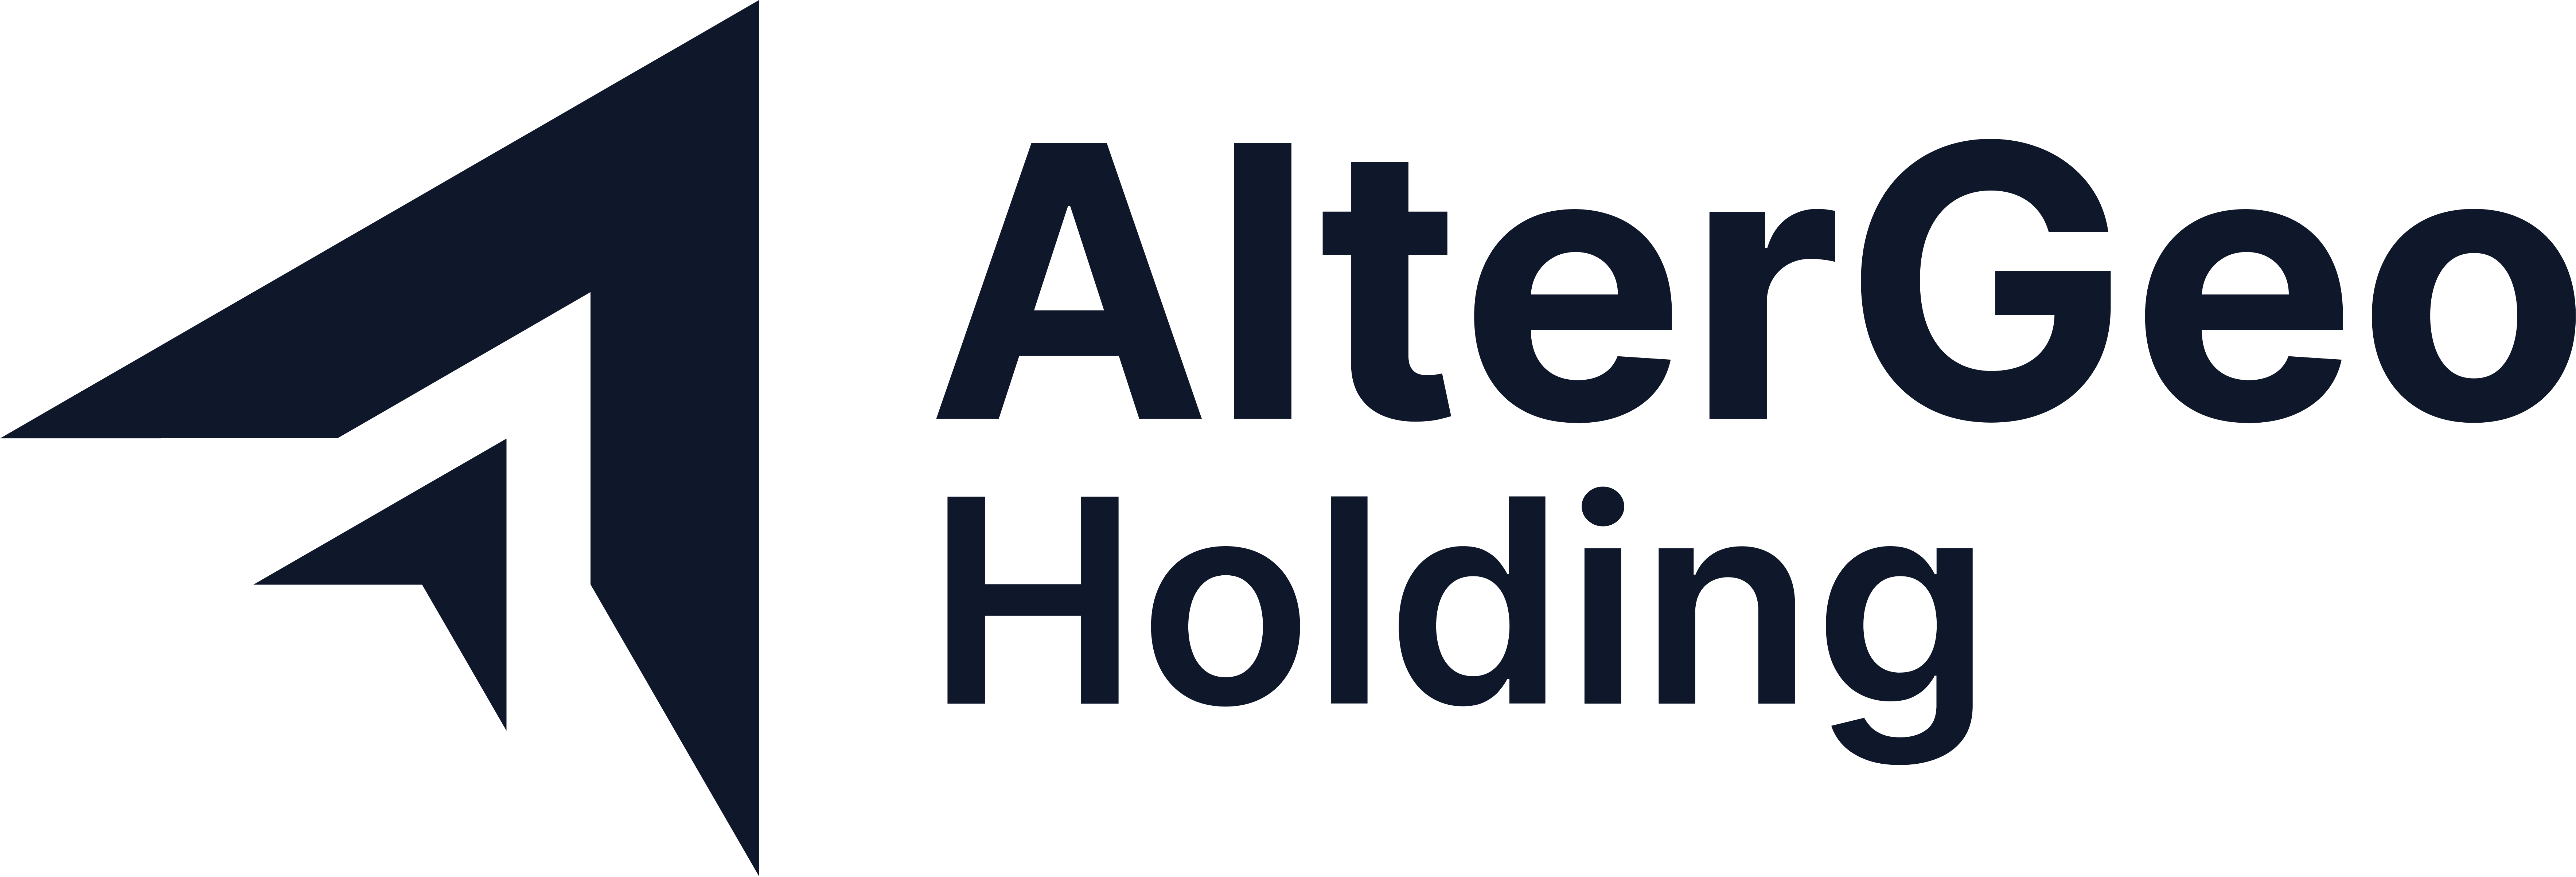 AlterGeo Holding